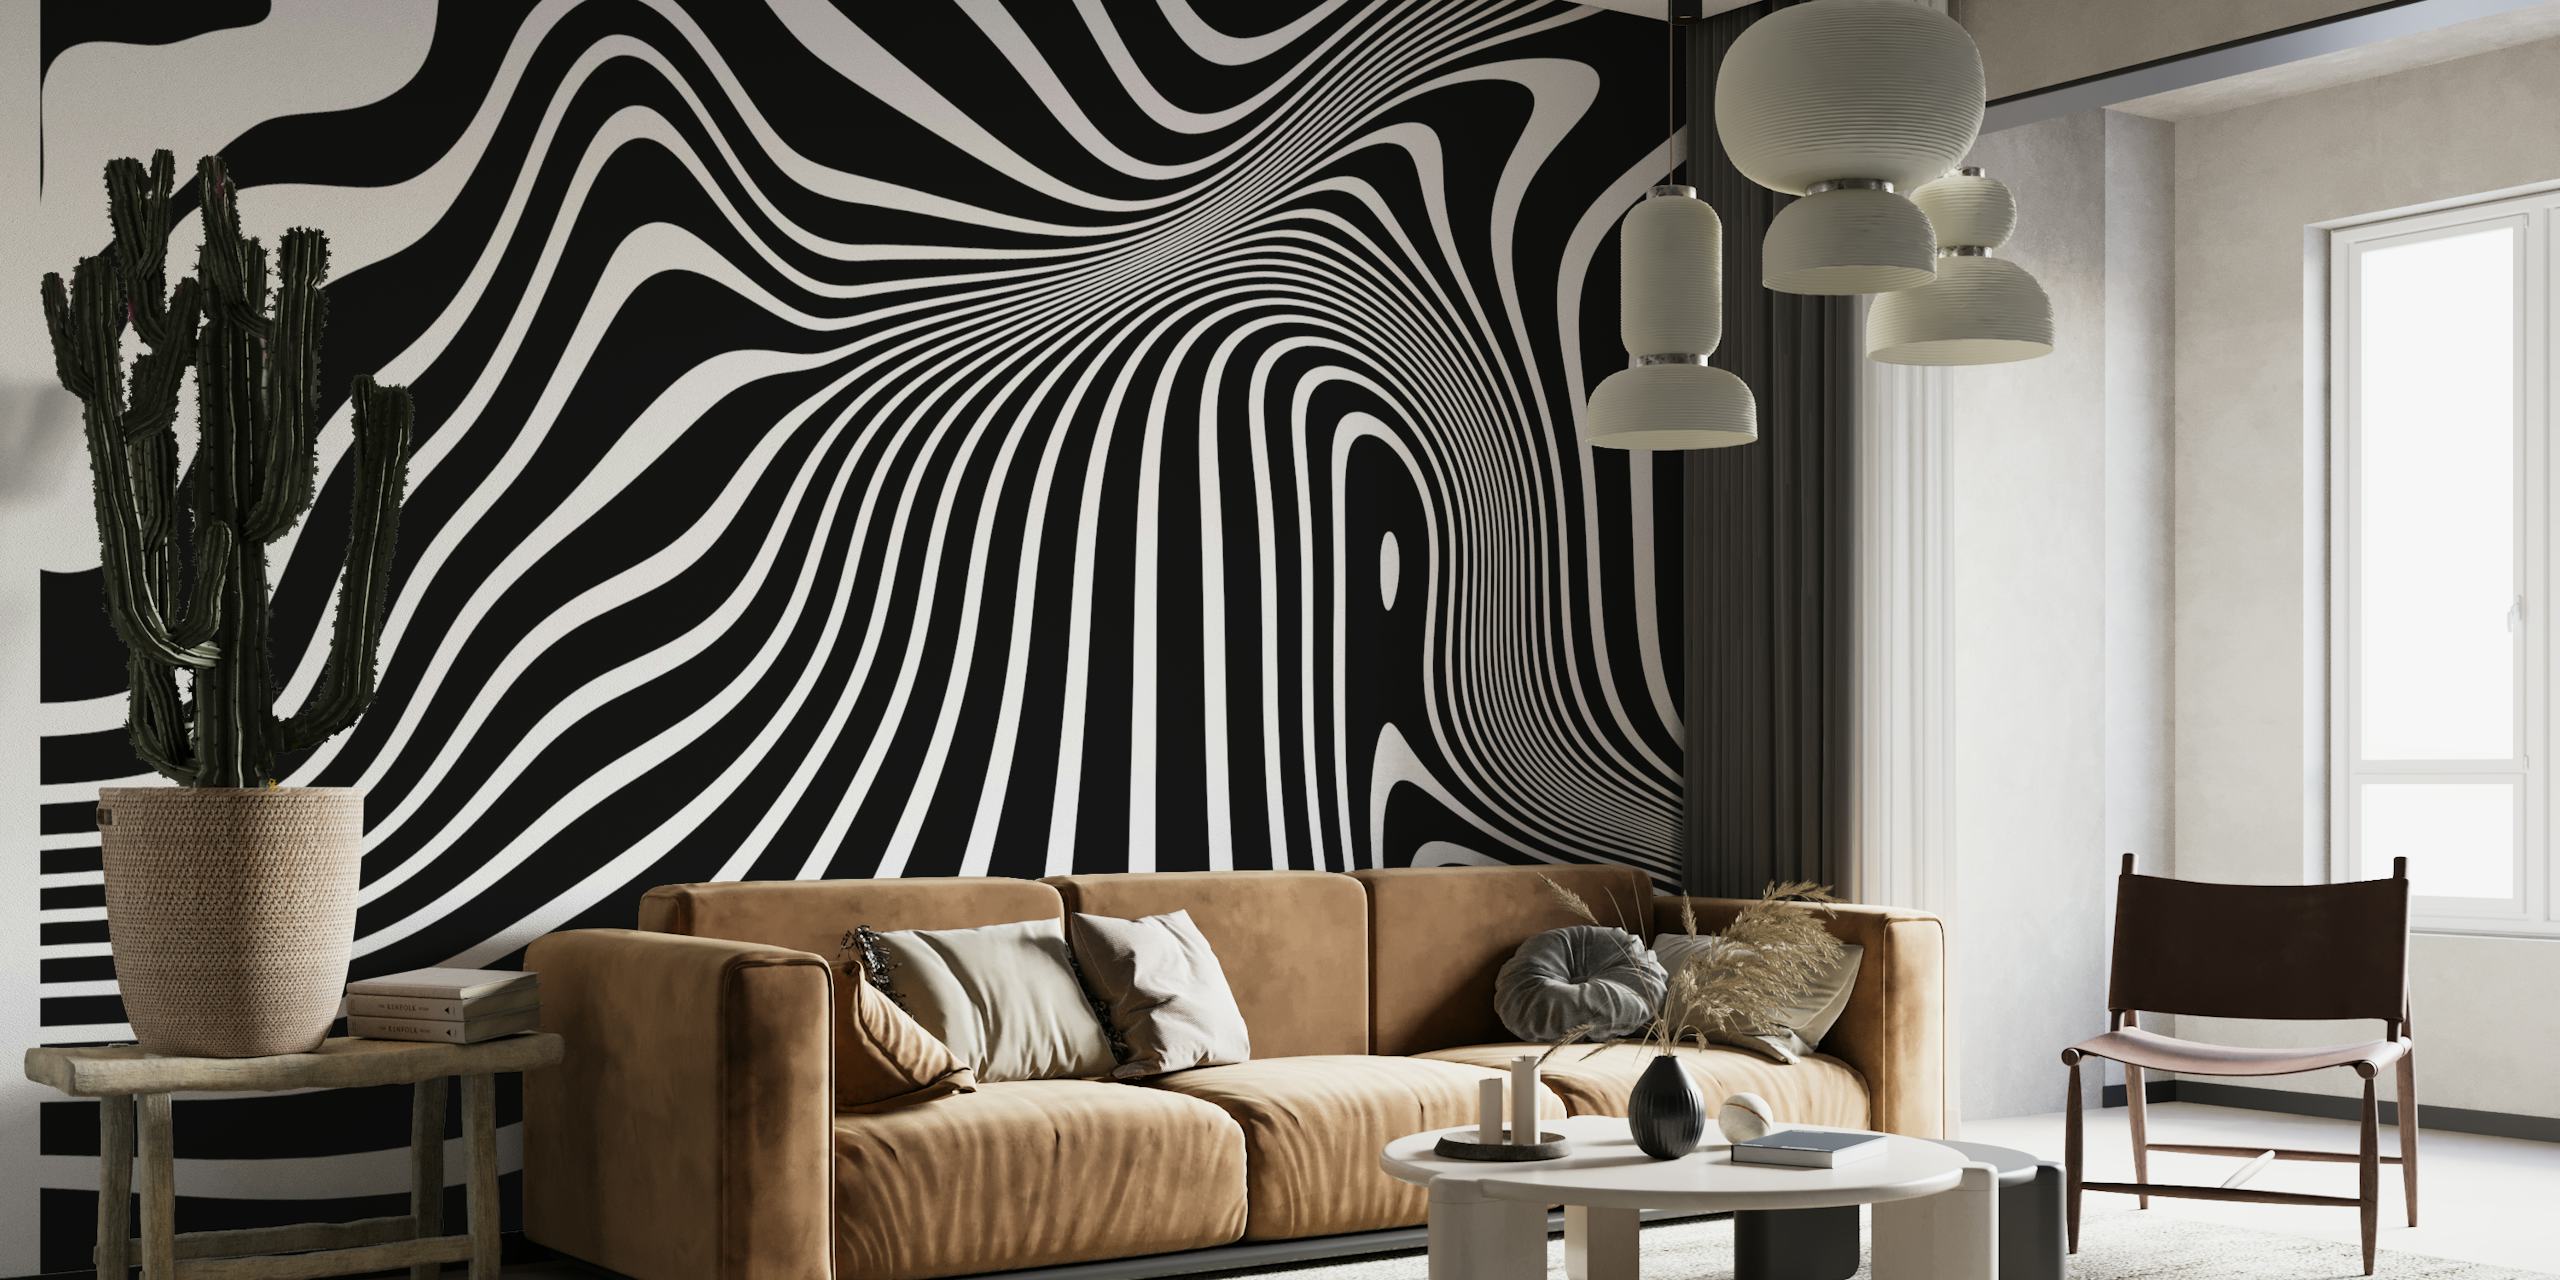 Minimalistická černobílá nástěnná malba op-art s tekutými liniemi